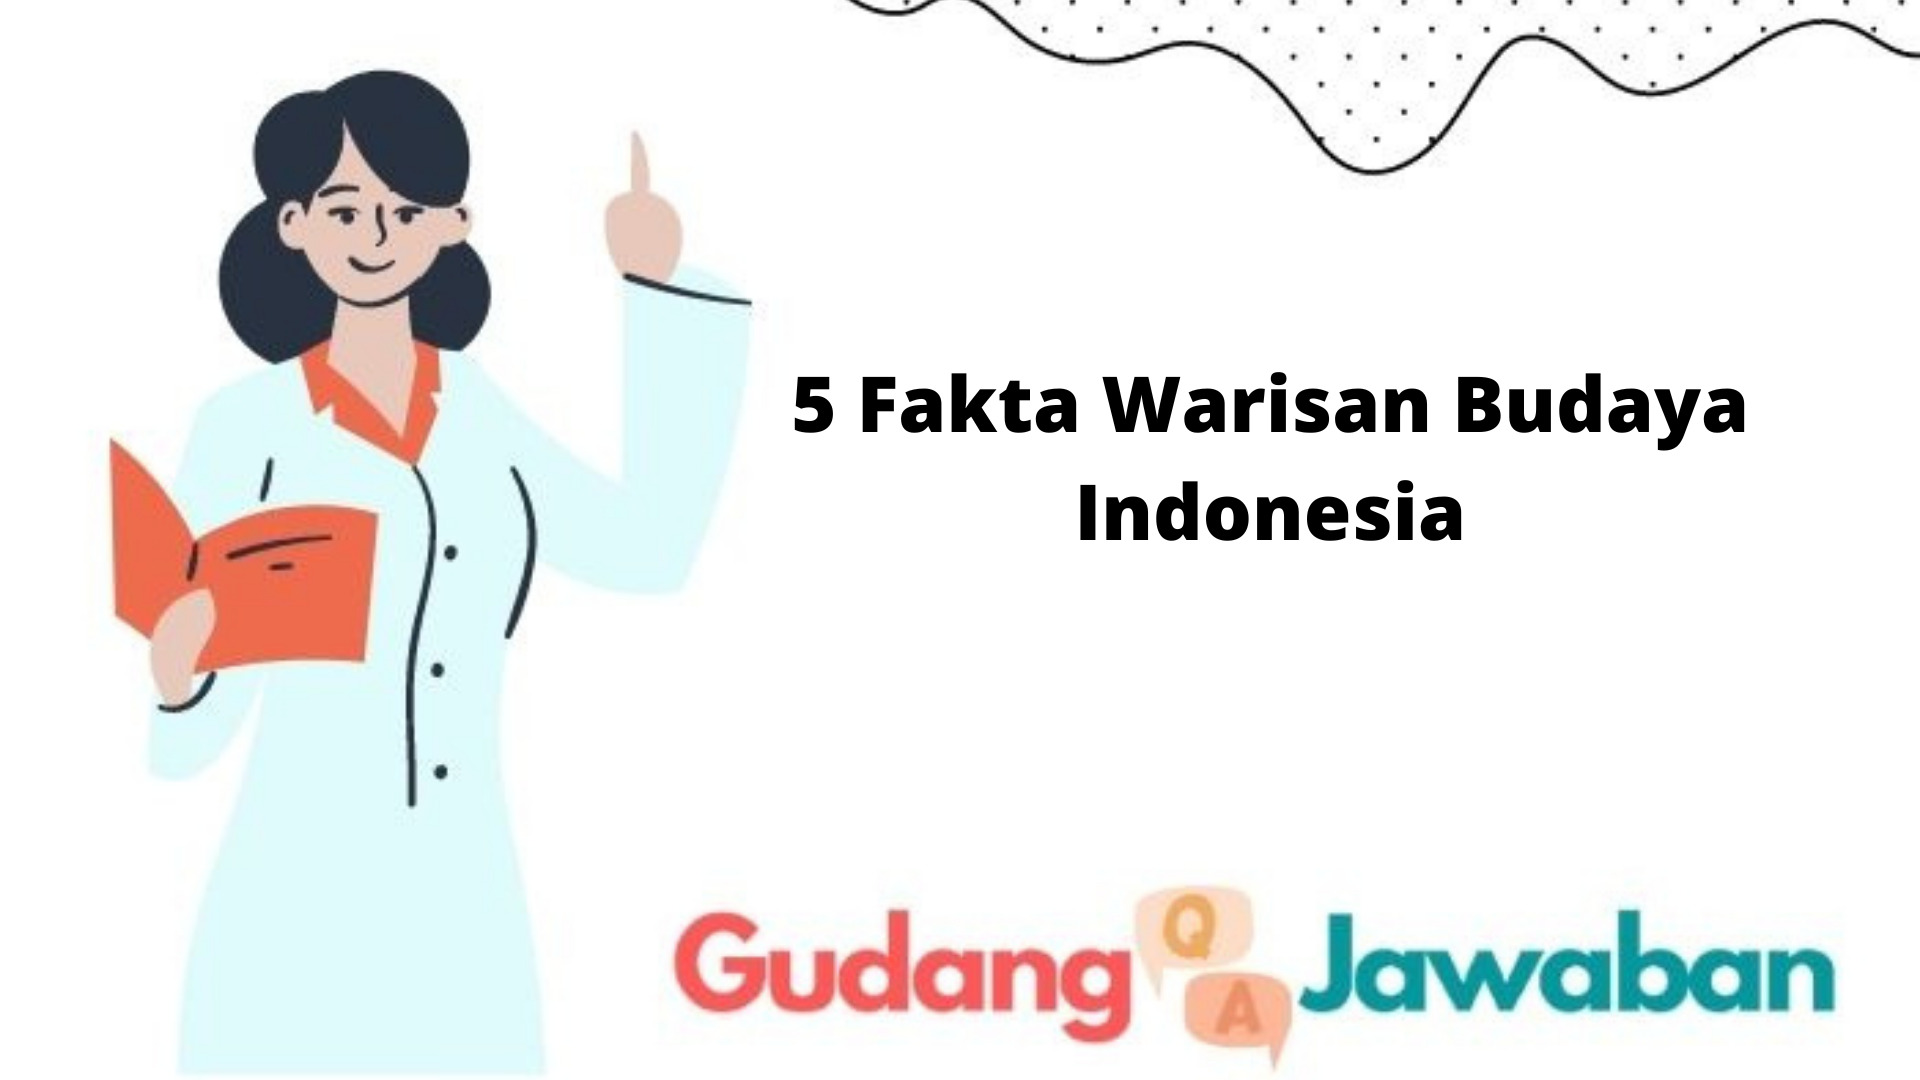 Belum banyak yang tau 5 Fakta Warisan Budaya Indonesia yang di akui Dunia